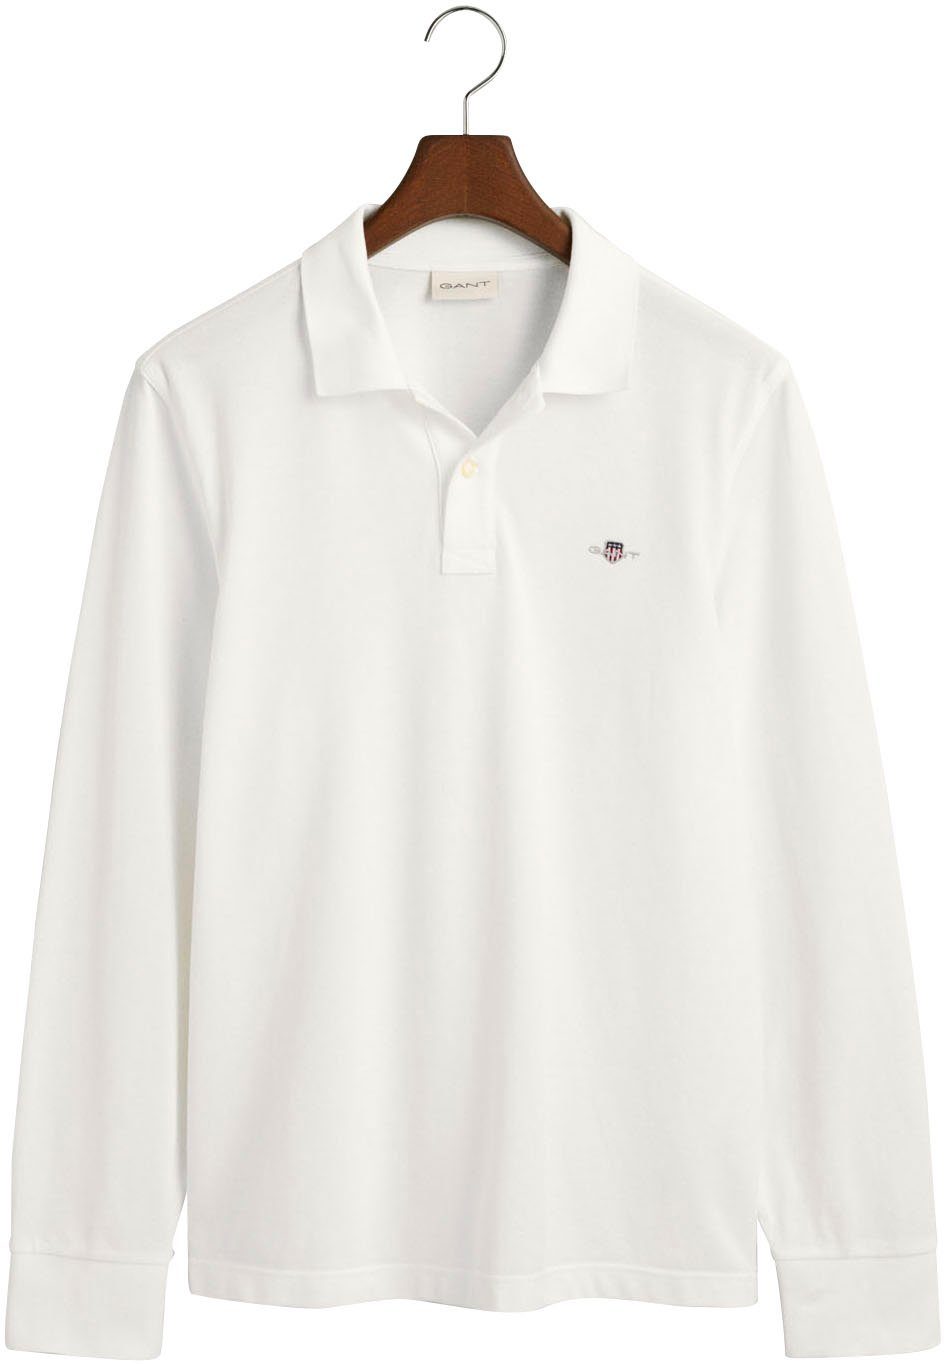 Poloshirt white Brust LS RUGGER Logotickerei mit Gant REG PIQUE SHIELD der auf